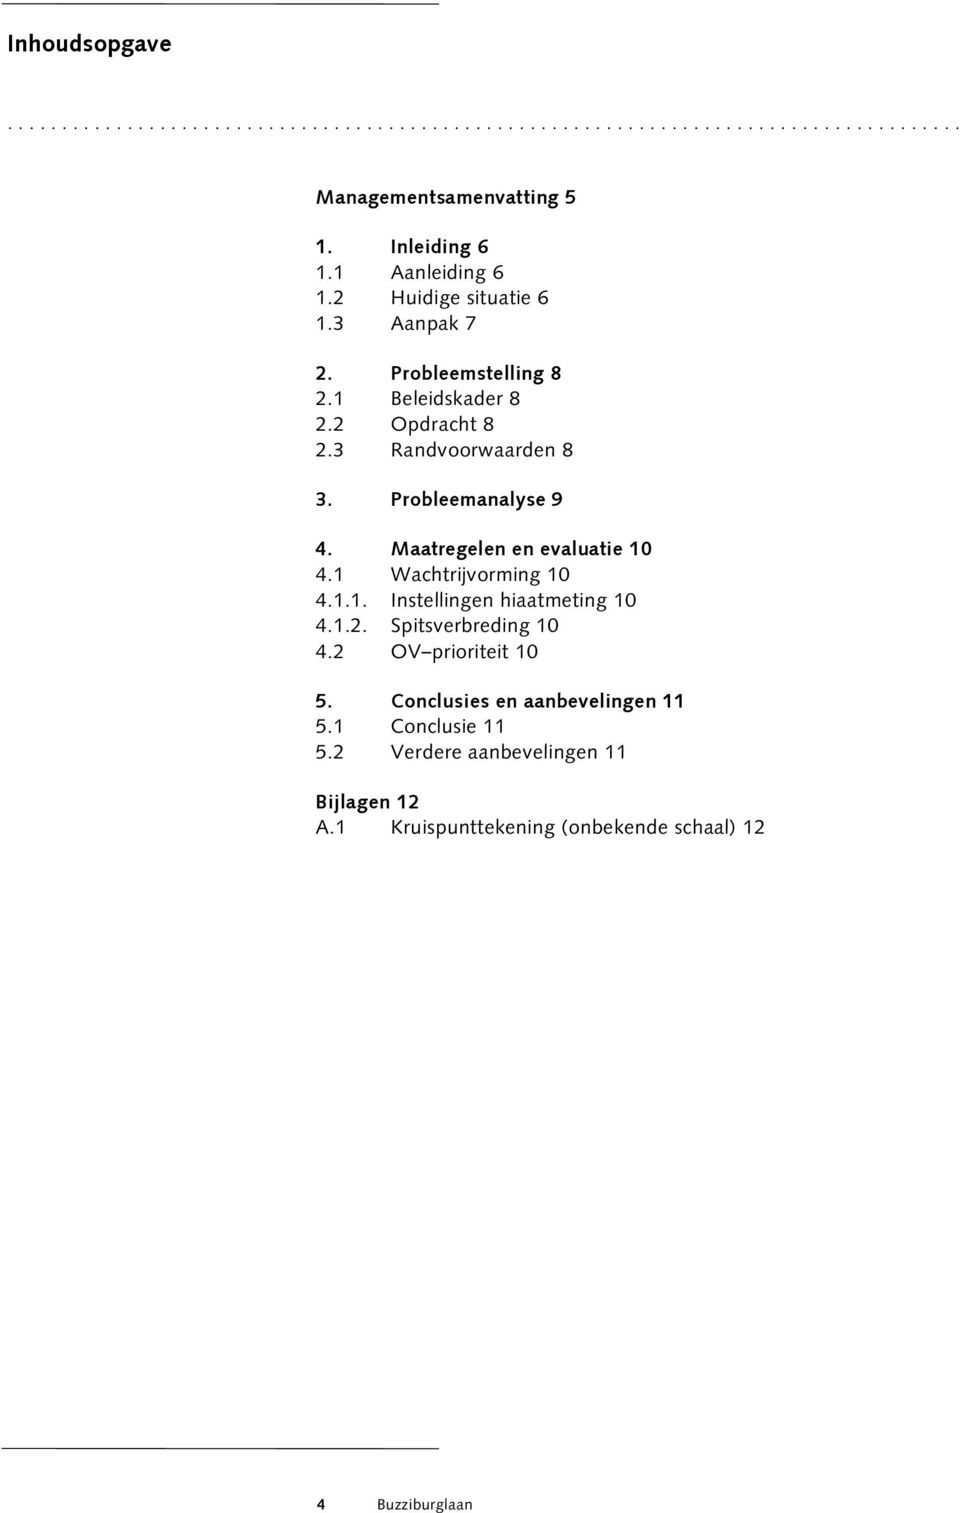 Probleemanalyse 9 4. Maatregelen en evaluatie 10 4.1 Wachtrijvorming 10 4.1.1. Instellingen hiaatmeting 10 4.1.2. Spitsverbreding 10 4.